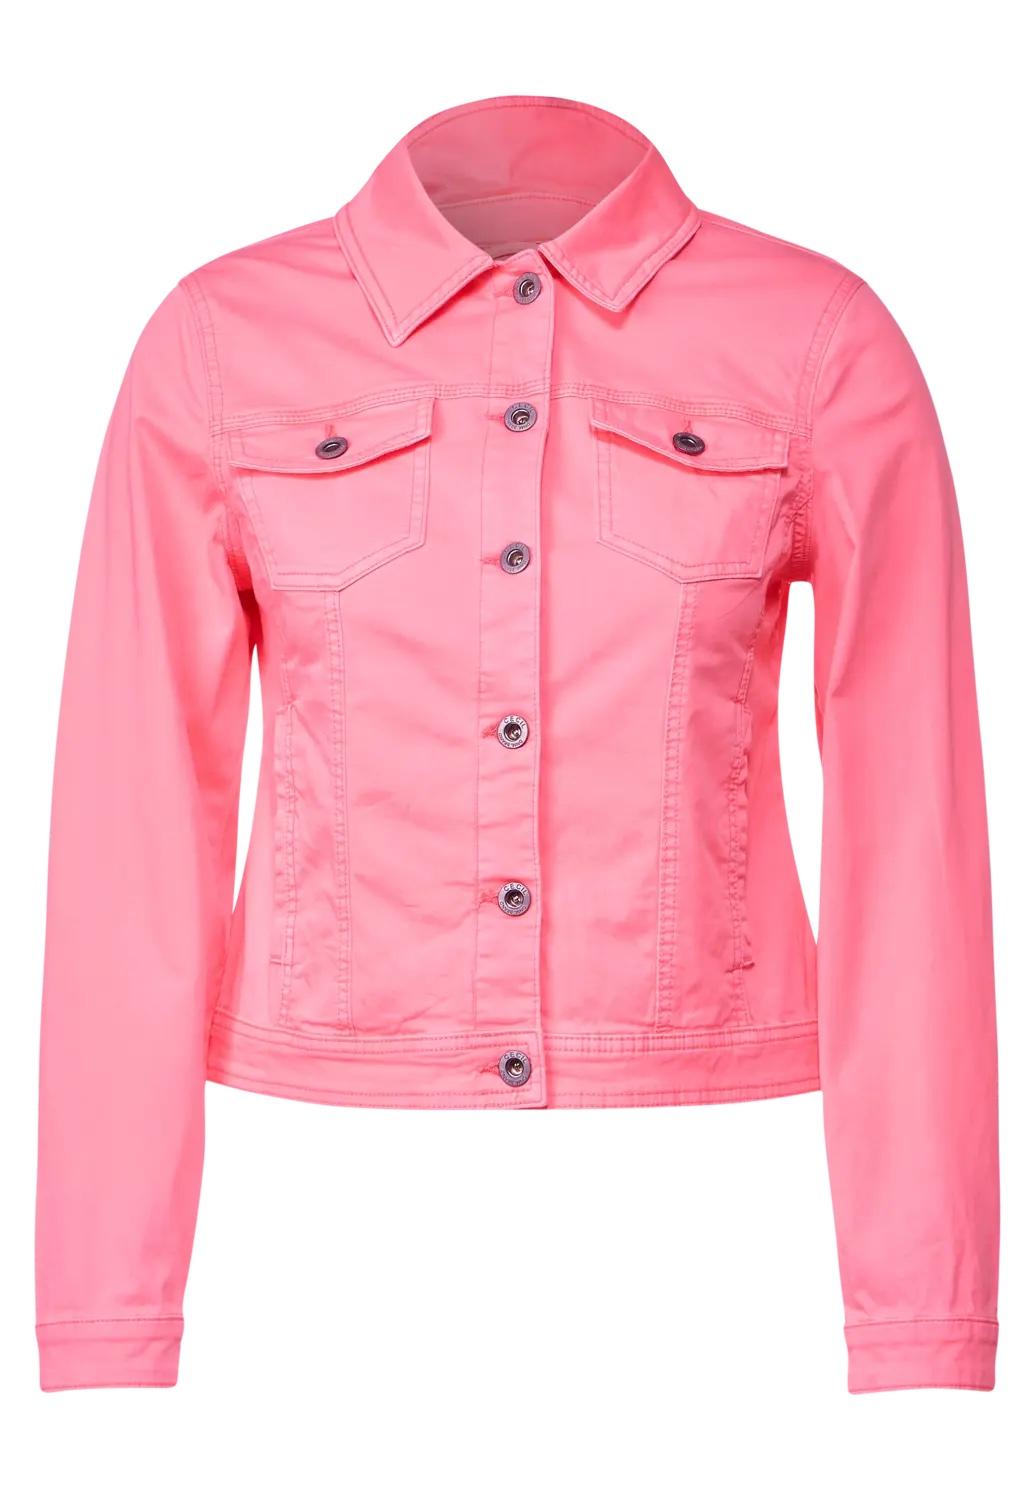 CECIL farebná džínsová bunda, pink